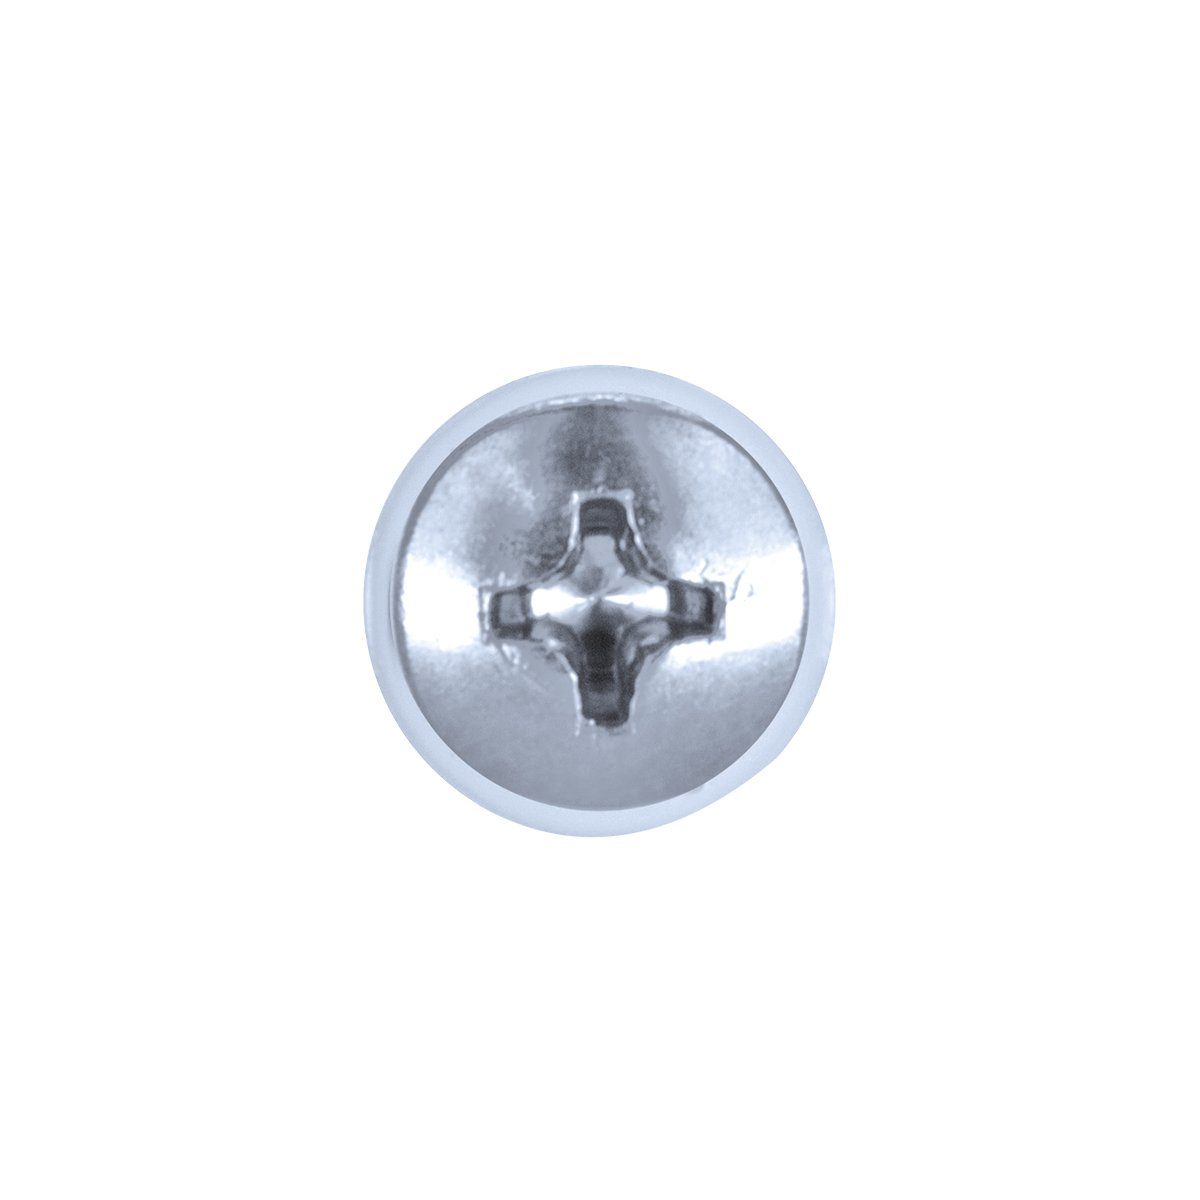 GOEBEL GmbH Blechschraube Profi-Industrie-Qualität 1000 ISO7049 St., 4,2 mm (1000x mit Phillips-Kreuzschlitz Werksnorm), verzinkt, Blechschrauben Scheibe Stahl – Polyamid 9,5 x – PH Linsenkopf DIN7981 3010242950, (PA)